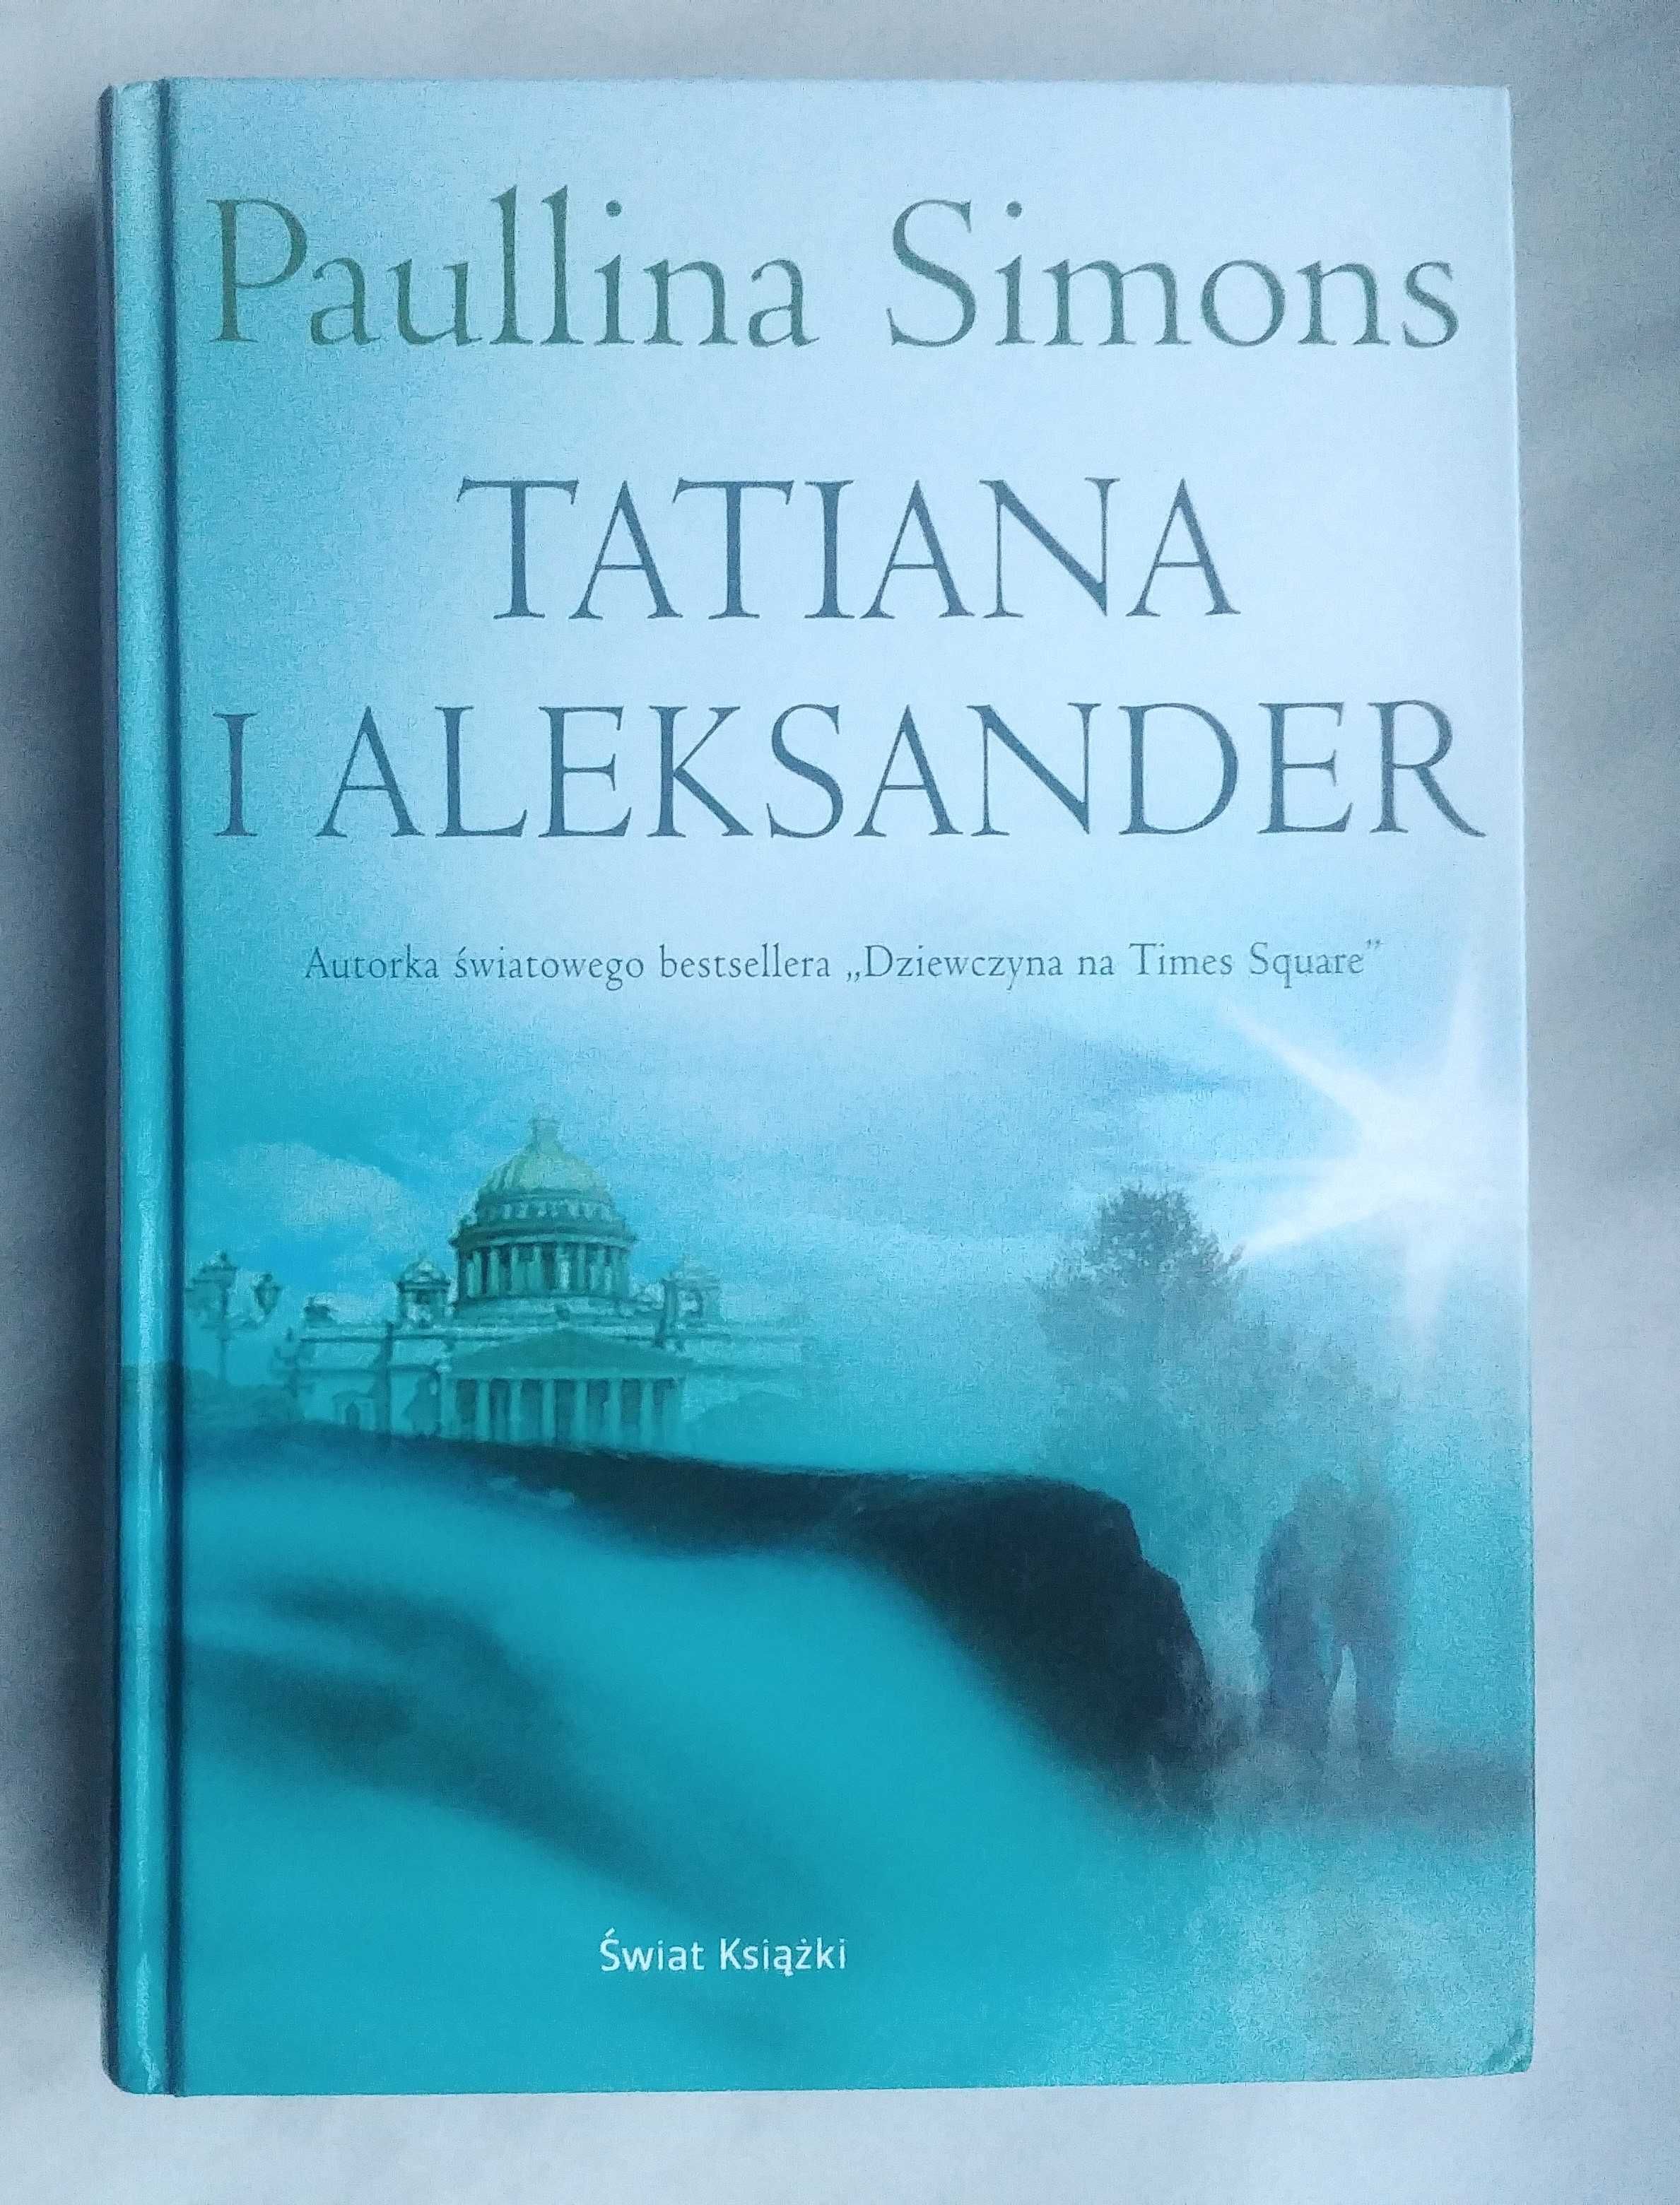 Paullina Simons - Tatiana i Aleksande cd. "Miedzianego jeźdźca"